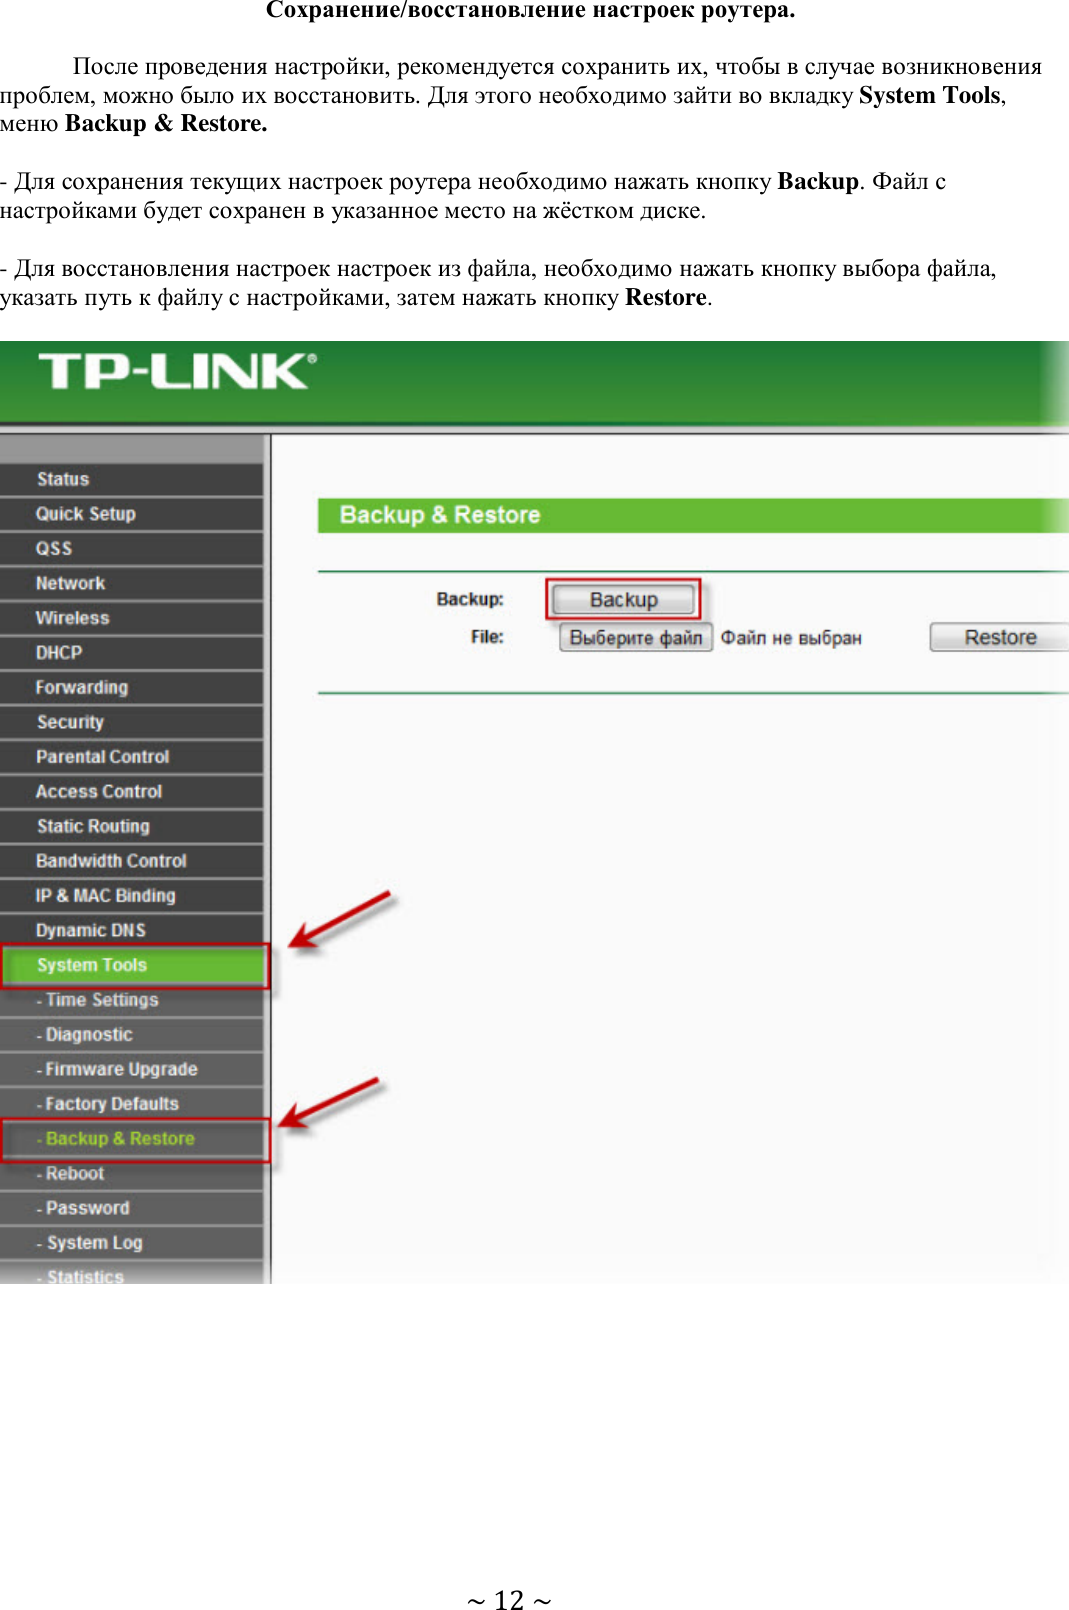 Вход в tp link с телефона. Веб-Интерфейс роутера TP-link 192.168.0.1. ТП линк роутер 192.168.1.1. ТП линк меню роутера. Войти в роутер ТП линк.